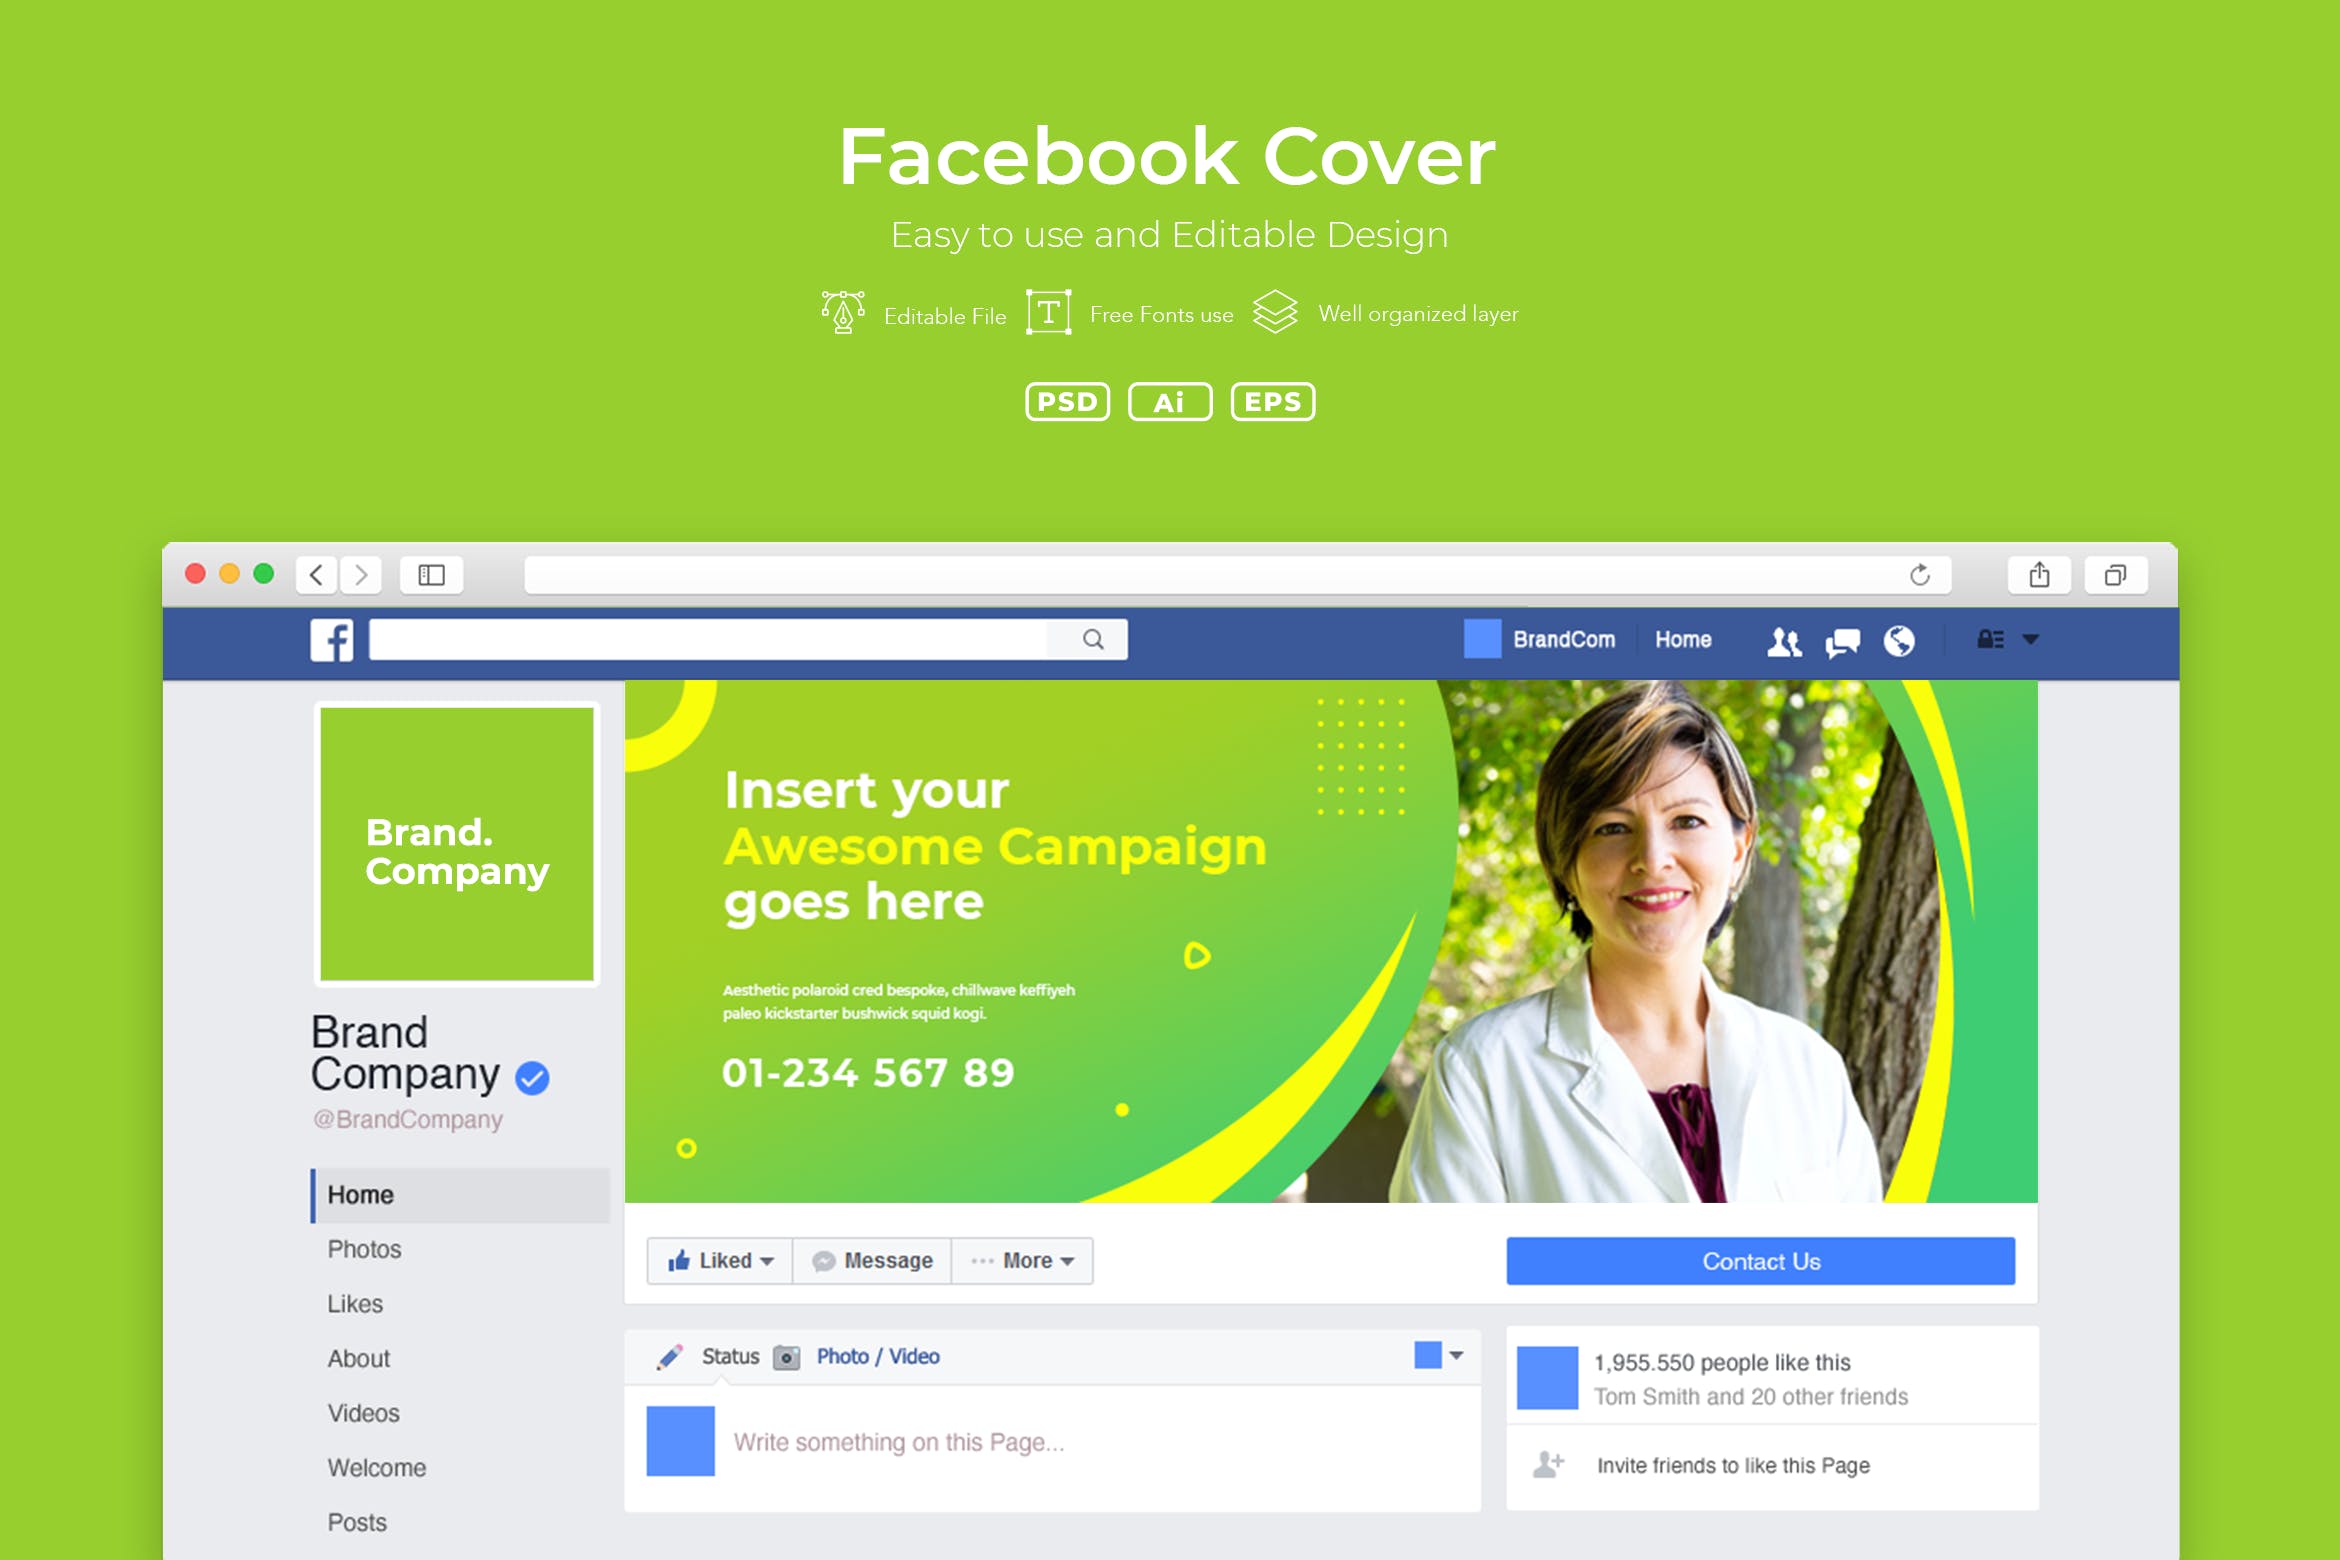 企业Facebook账号主页封面设计模板素材库精选v2.2 ADL Facebook Cover.v2.2插图